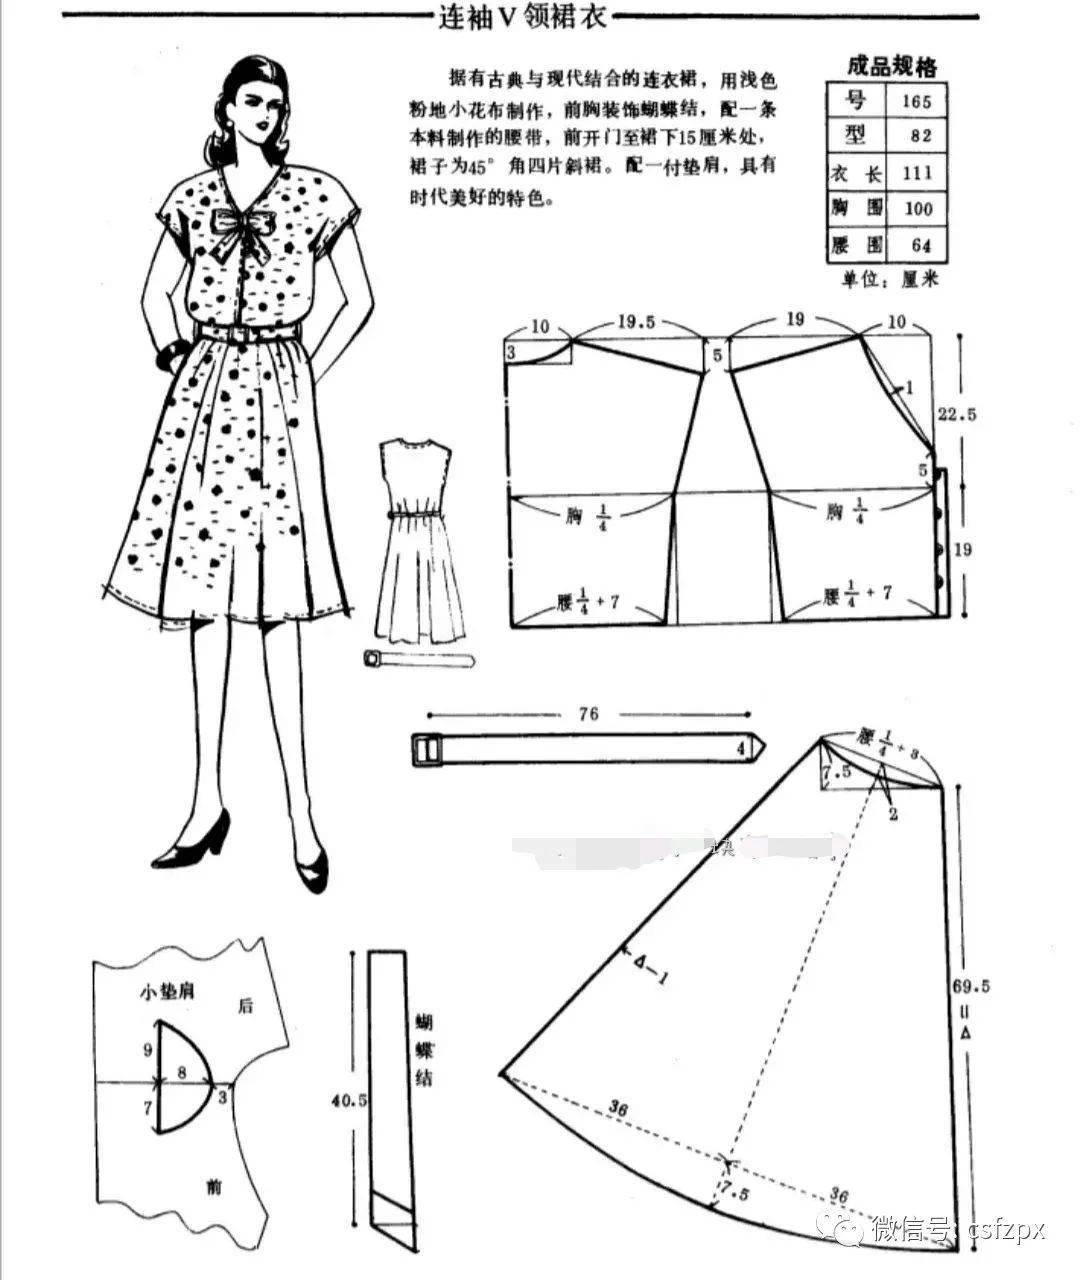 21款夏季连衣裙结构纸样裁剪图分享!